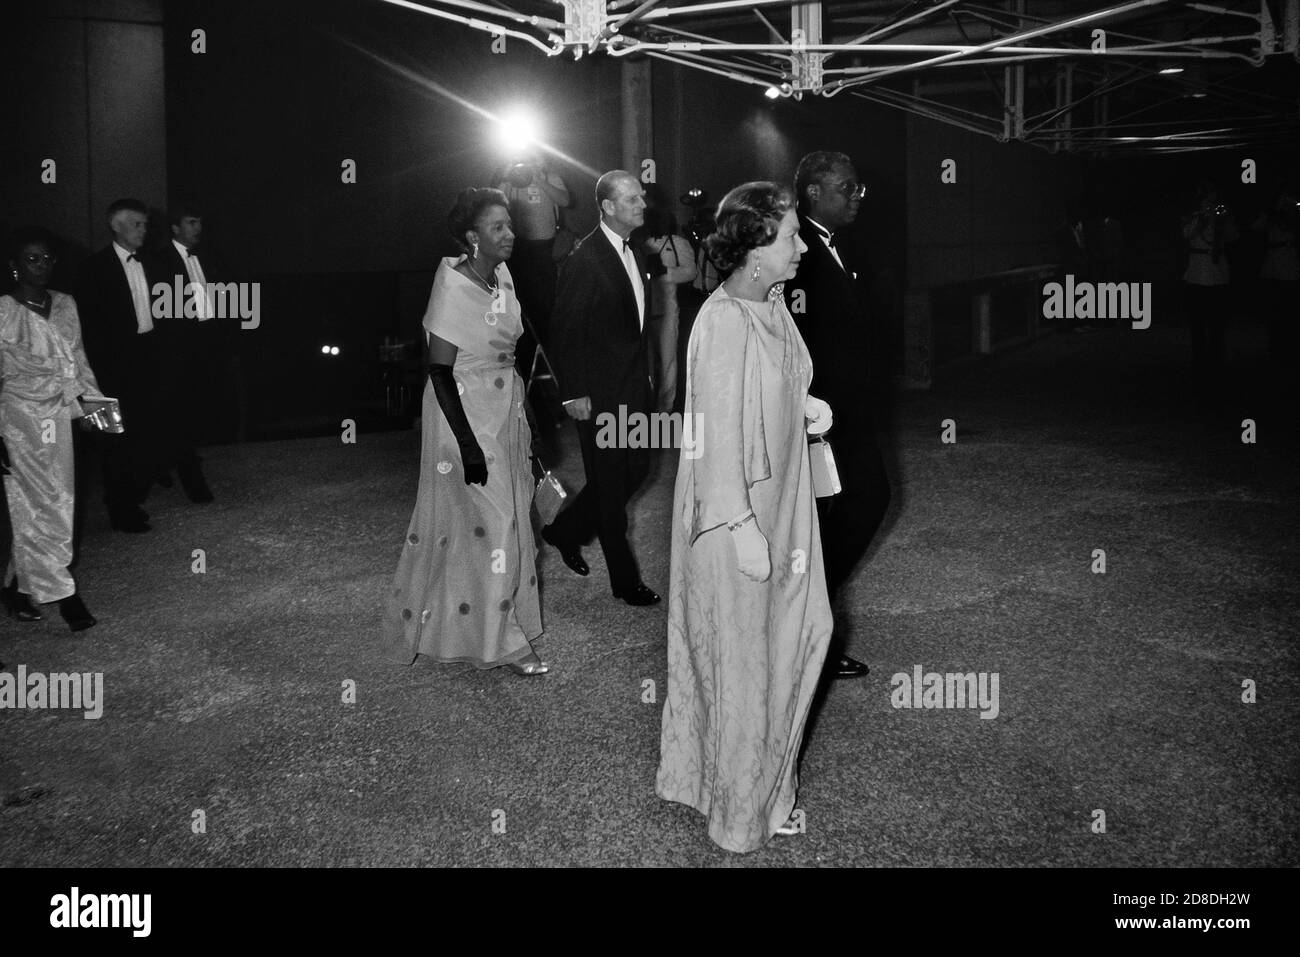 La regina Elisabetta II accompagnata dal principe Filippo, duca di Edimburgo, partecipa a uno spettacolo di gala presso la Frank Collymore Hall, durante una visita di quattro giorni all'isola caraibica delle Barbados. 8 marzo 1989. Foto Stock